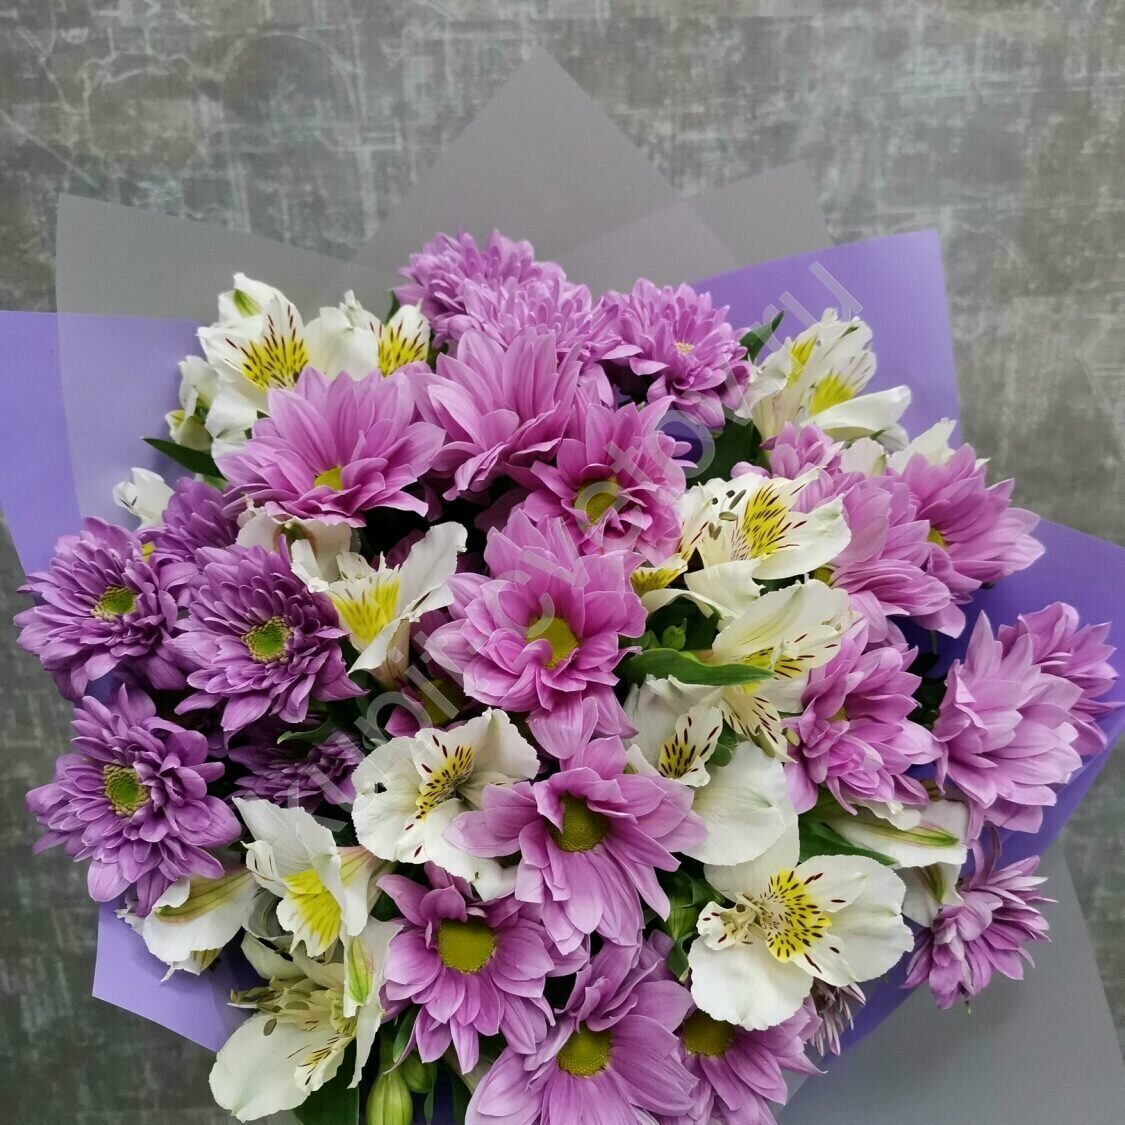 Недорогие букеты цветов на День учителя